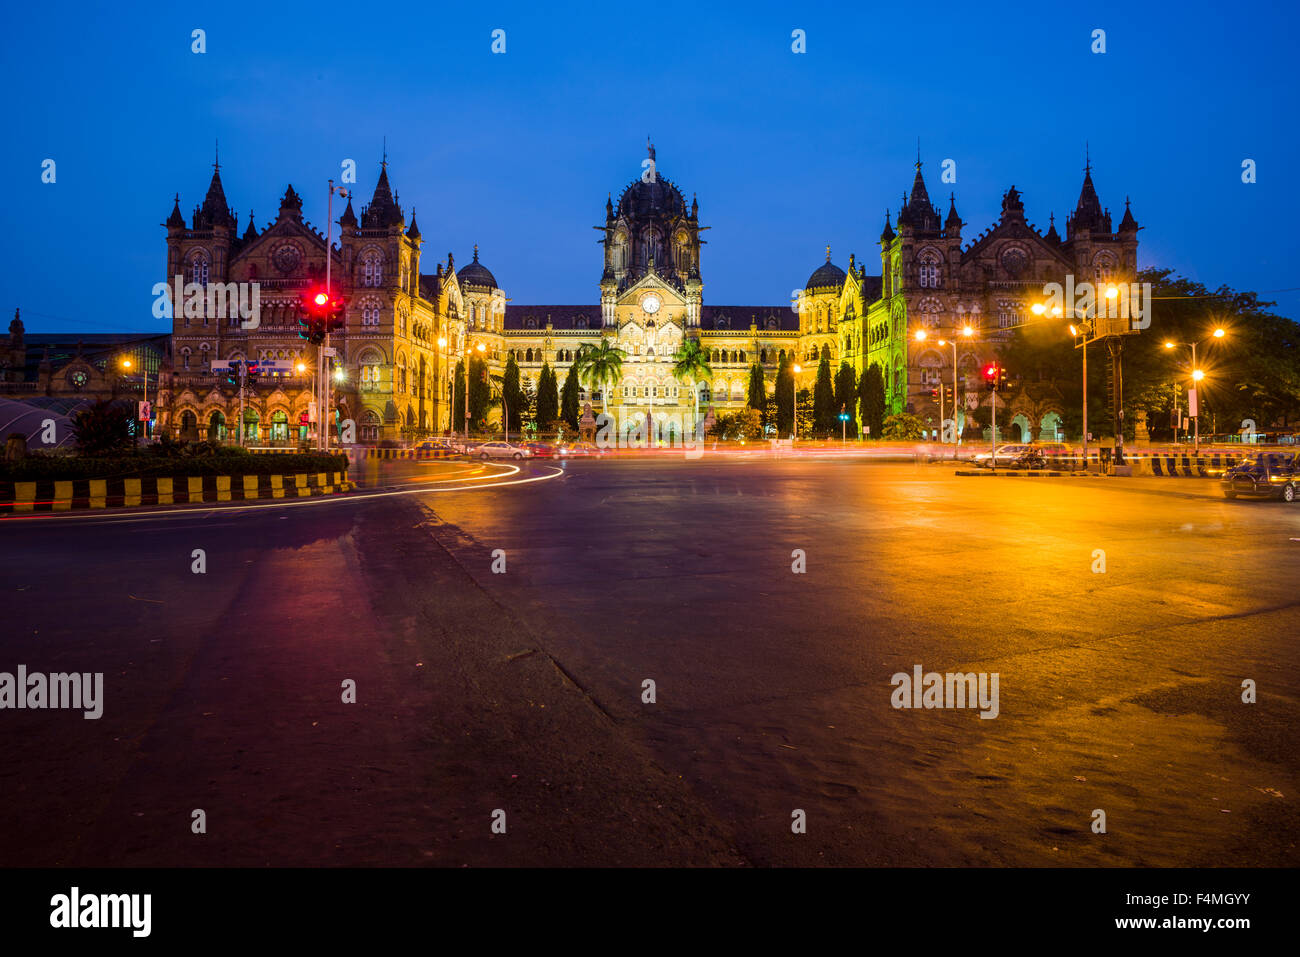 L'ancienne gare terminus victoria, maintenant la gare Chhatrapati Shivaji, vu à travers le square at night Banque D'Images